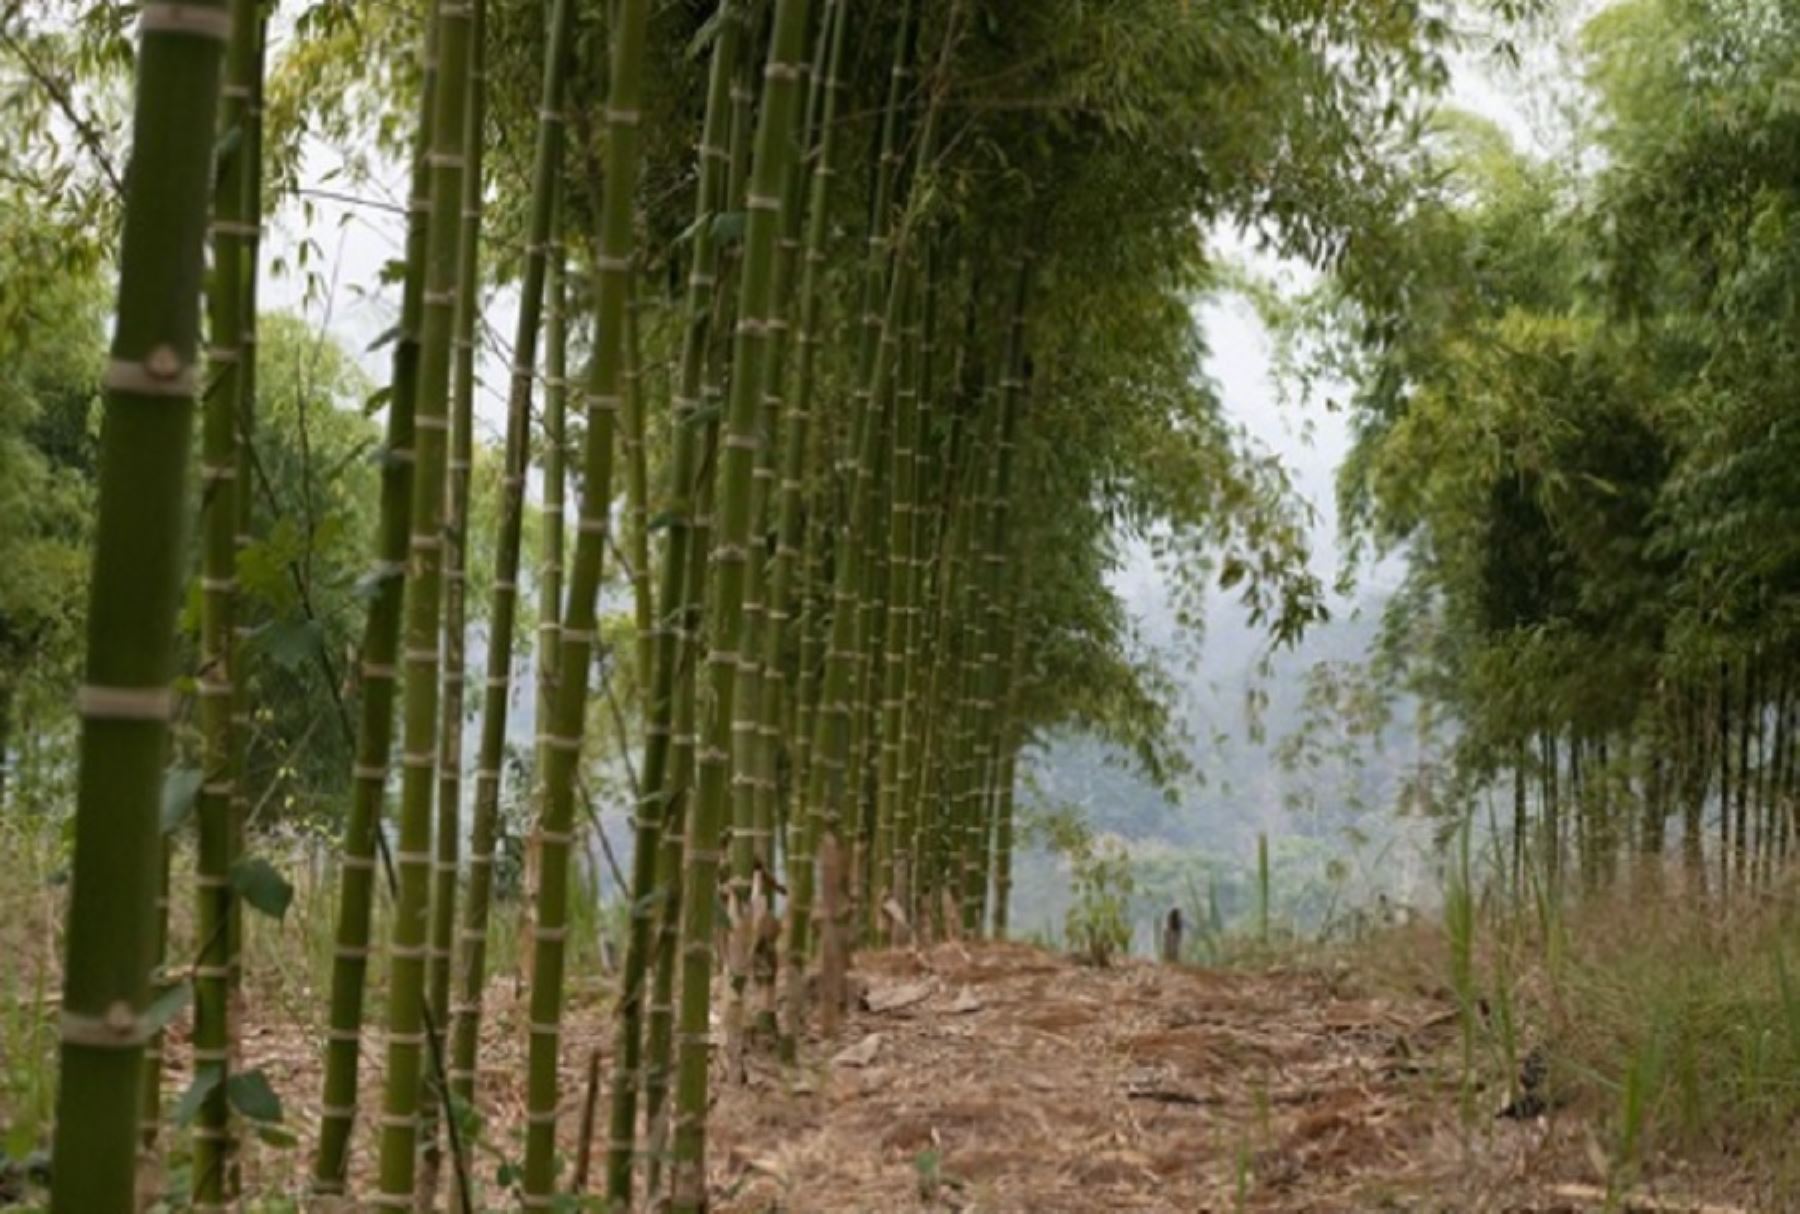 El Gobierno Regional de Cusco oficializó el reconocimiento de la Mesa Técnica Regional del Bambú, conformada por instituciones públicas y privadas y cuya secretaría técnica recae en el Servicio Nacional Forestal y de Fauna Silvestre (Serfor), del Ministerio de Desarrollo Agrario y Riego.